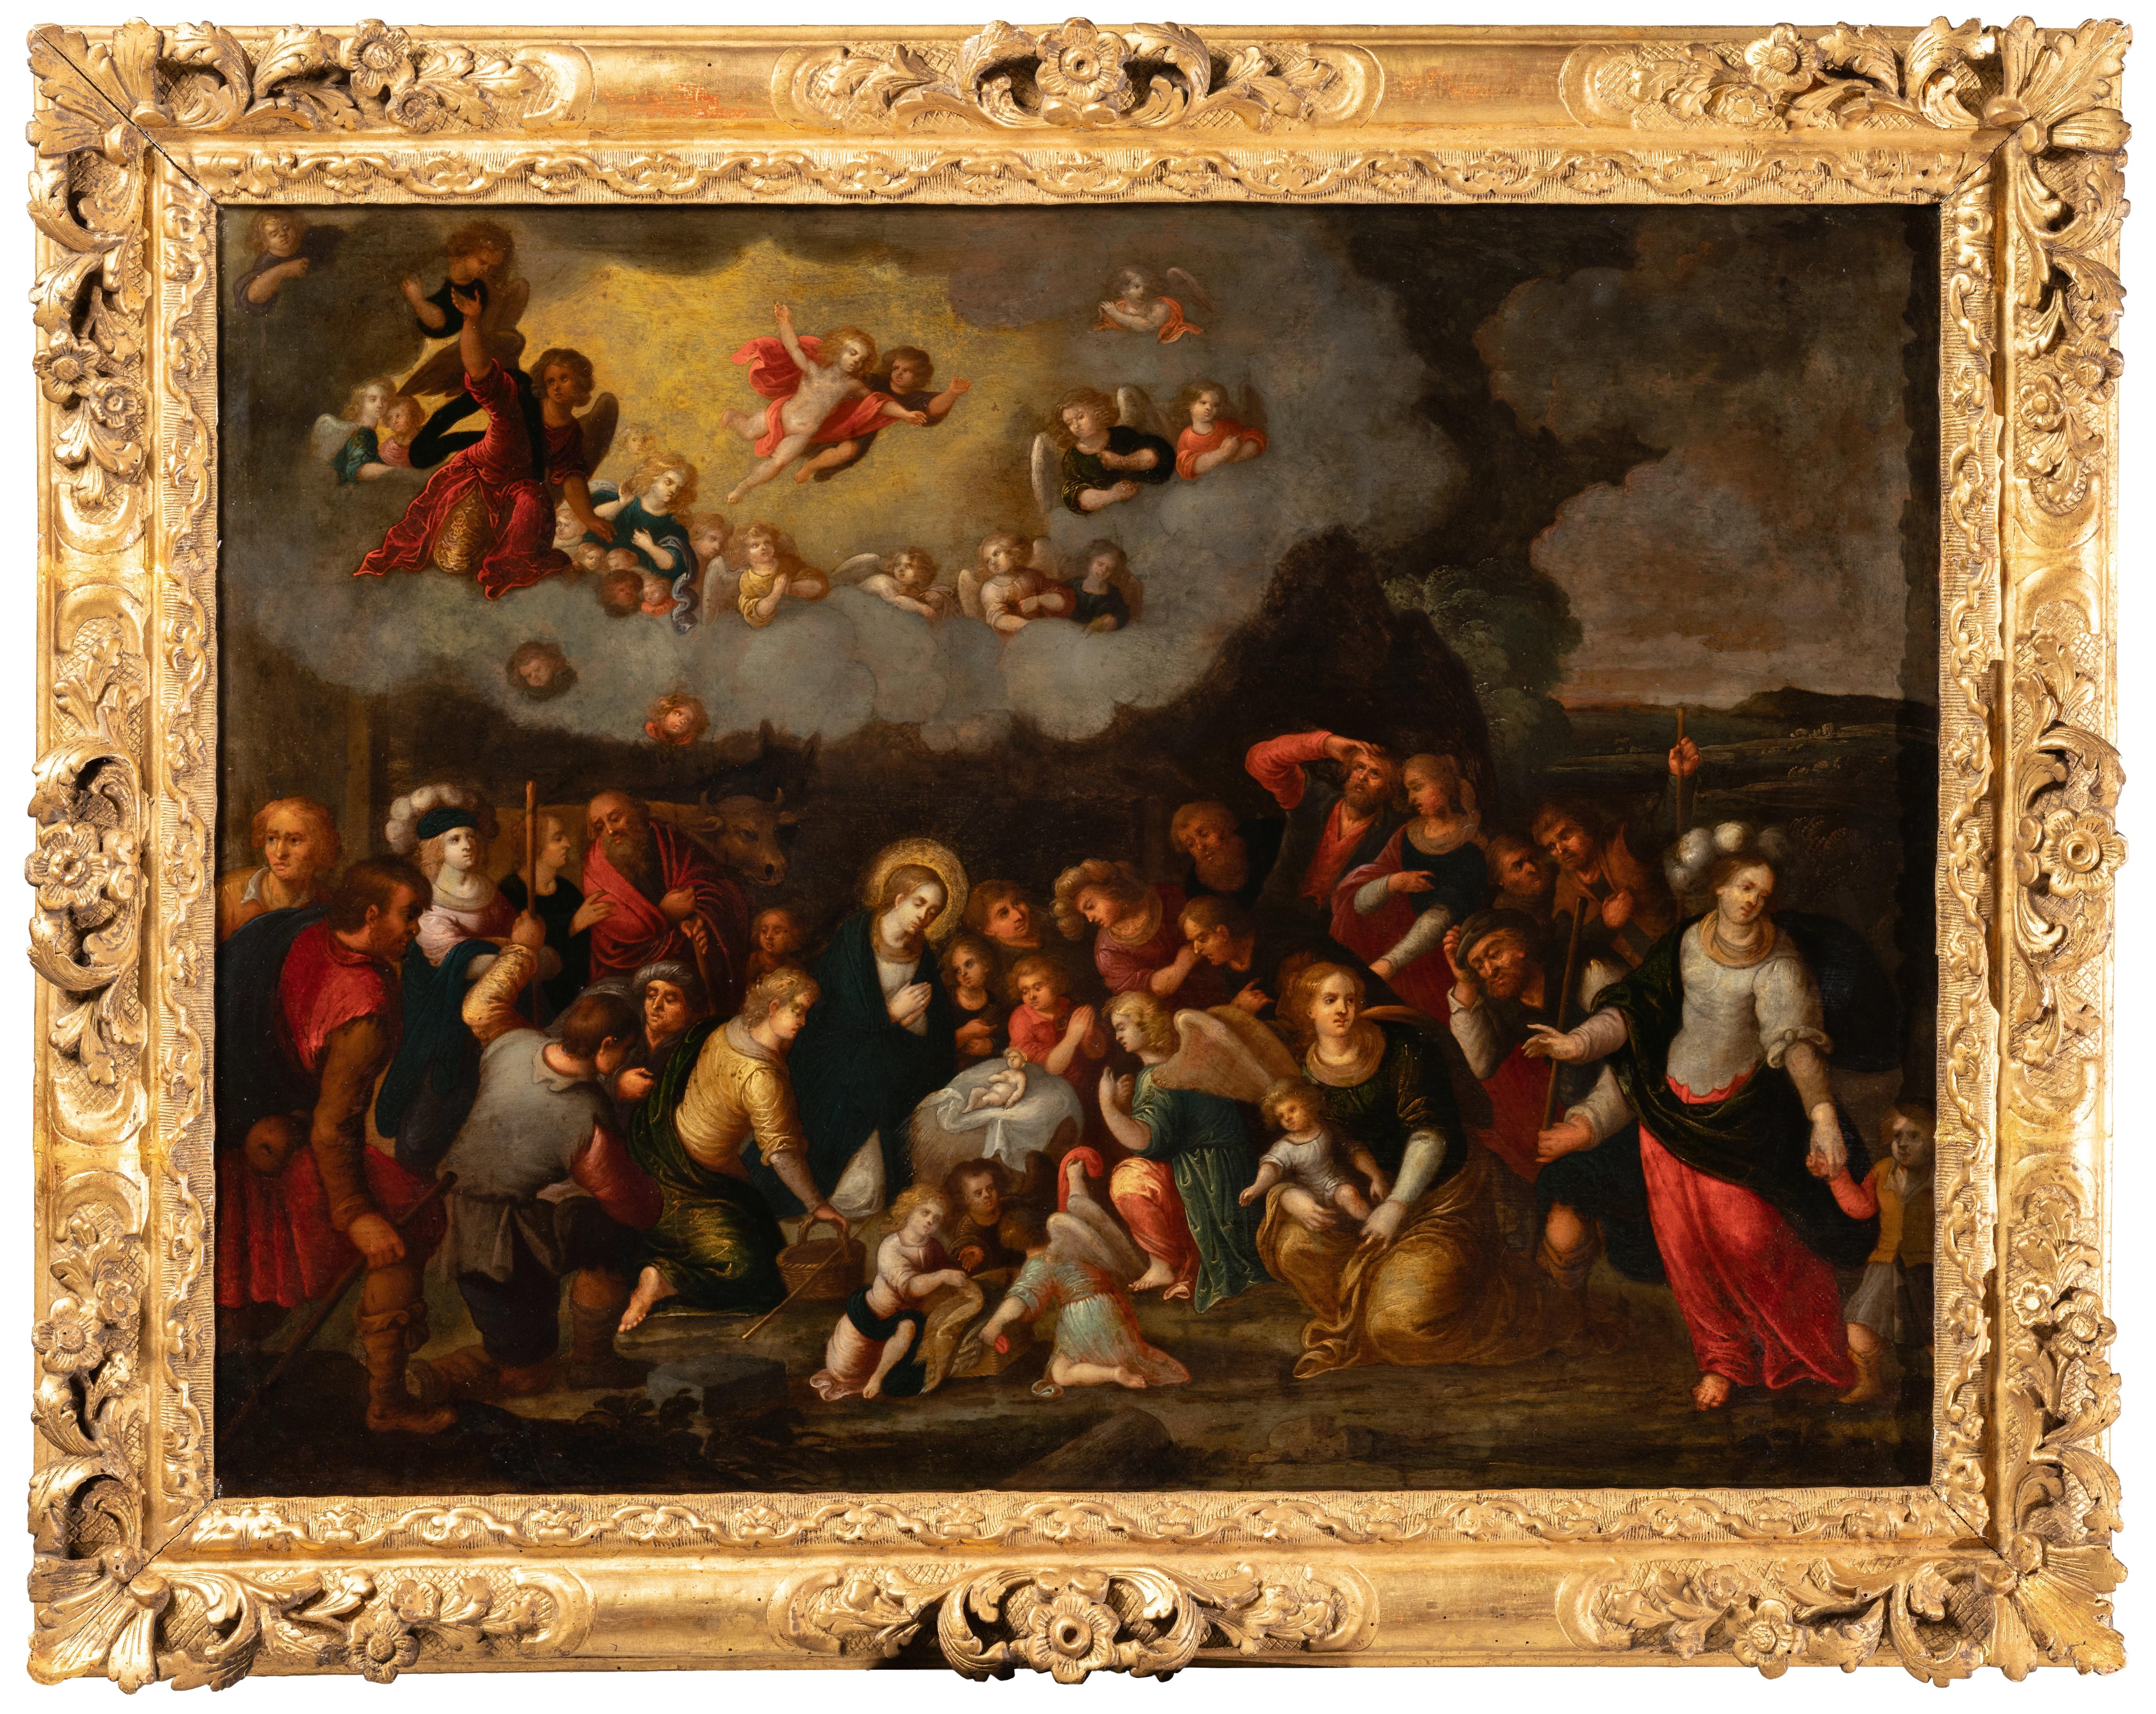 Anbetung der Hirten
Zuschreibung an Louis de Caullery (1580-1622)
Antwerpener Schule, 17. Jahrhundert, um 1620
Öl auf Kupfer: H. 54 cm (21,26 in.), B. 72 cm (28,35 in.)
Ein vergoldeter Rahmen aus dem 17. Jahrhundert aus der Zeit Ludwigs XIV. mit